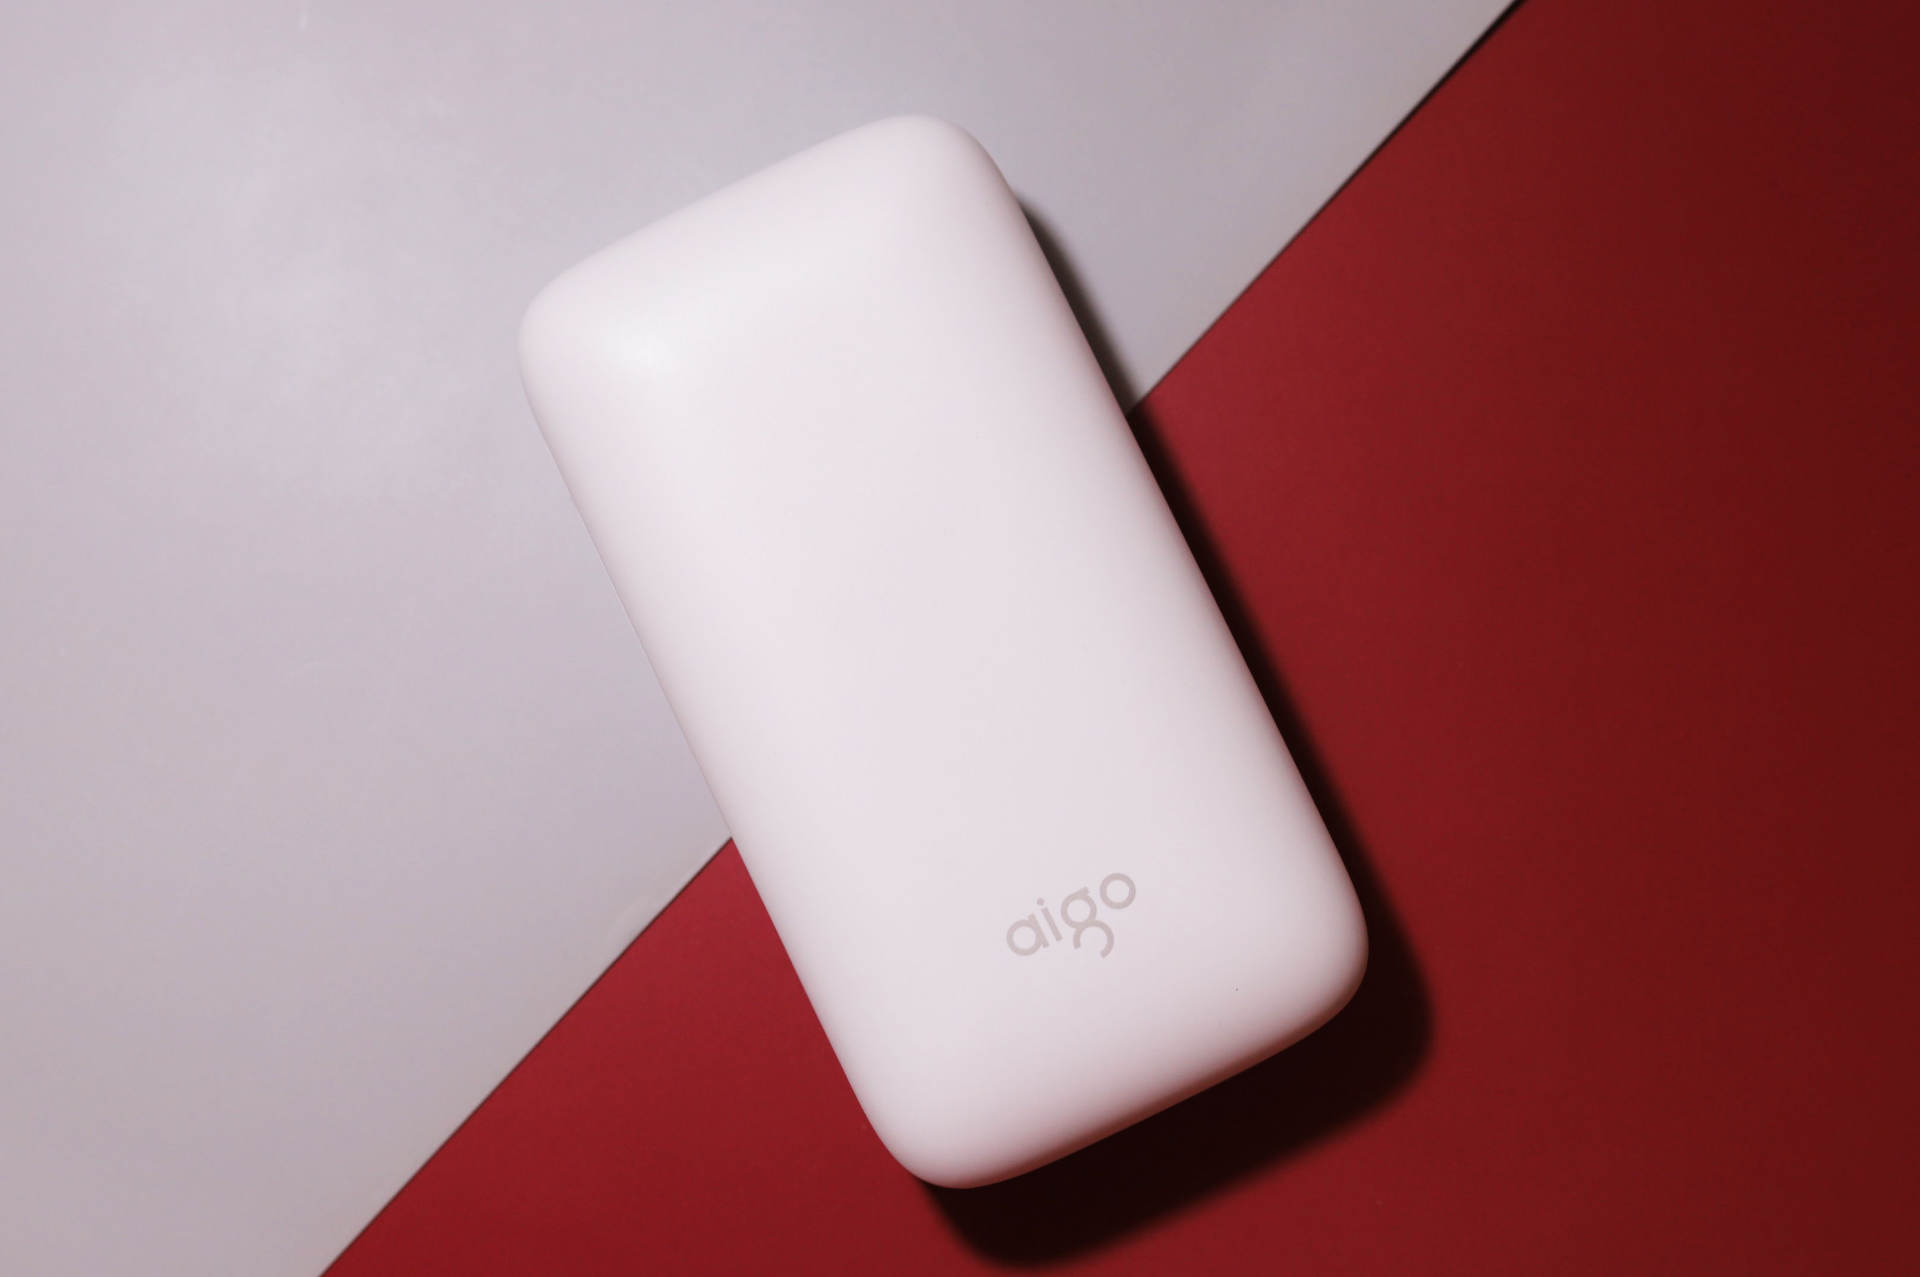 爱国者aigo X10P充电宝使用报告:小巧光滑如肥皂,双向快充瞬间补电